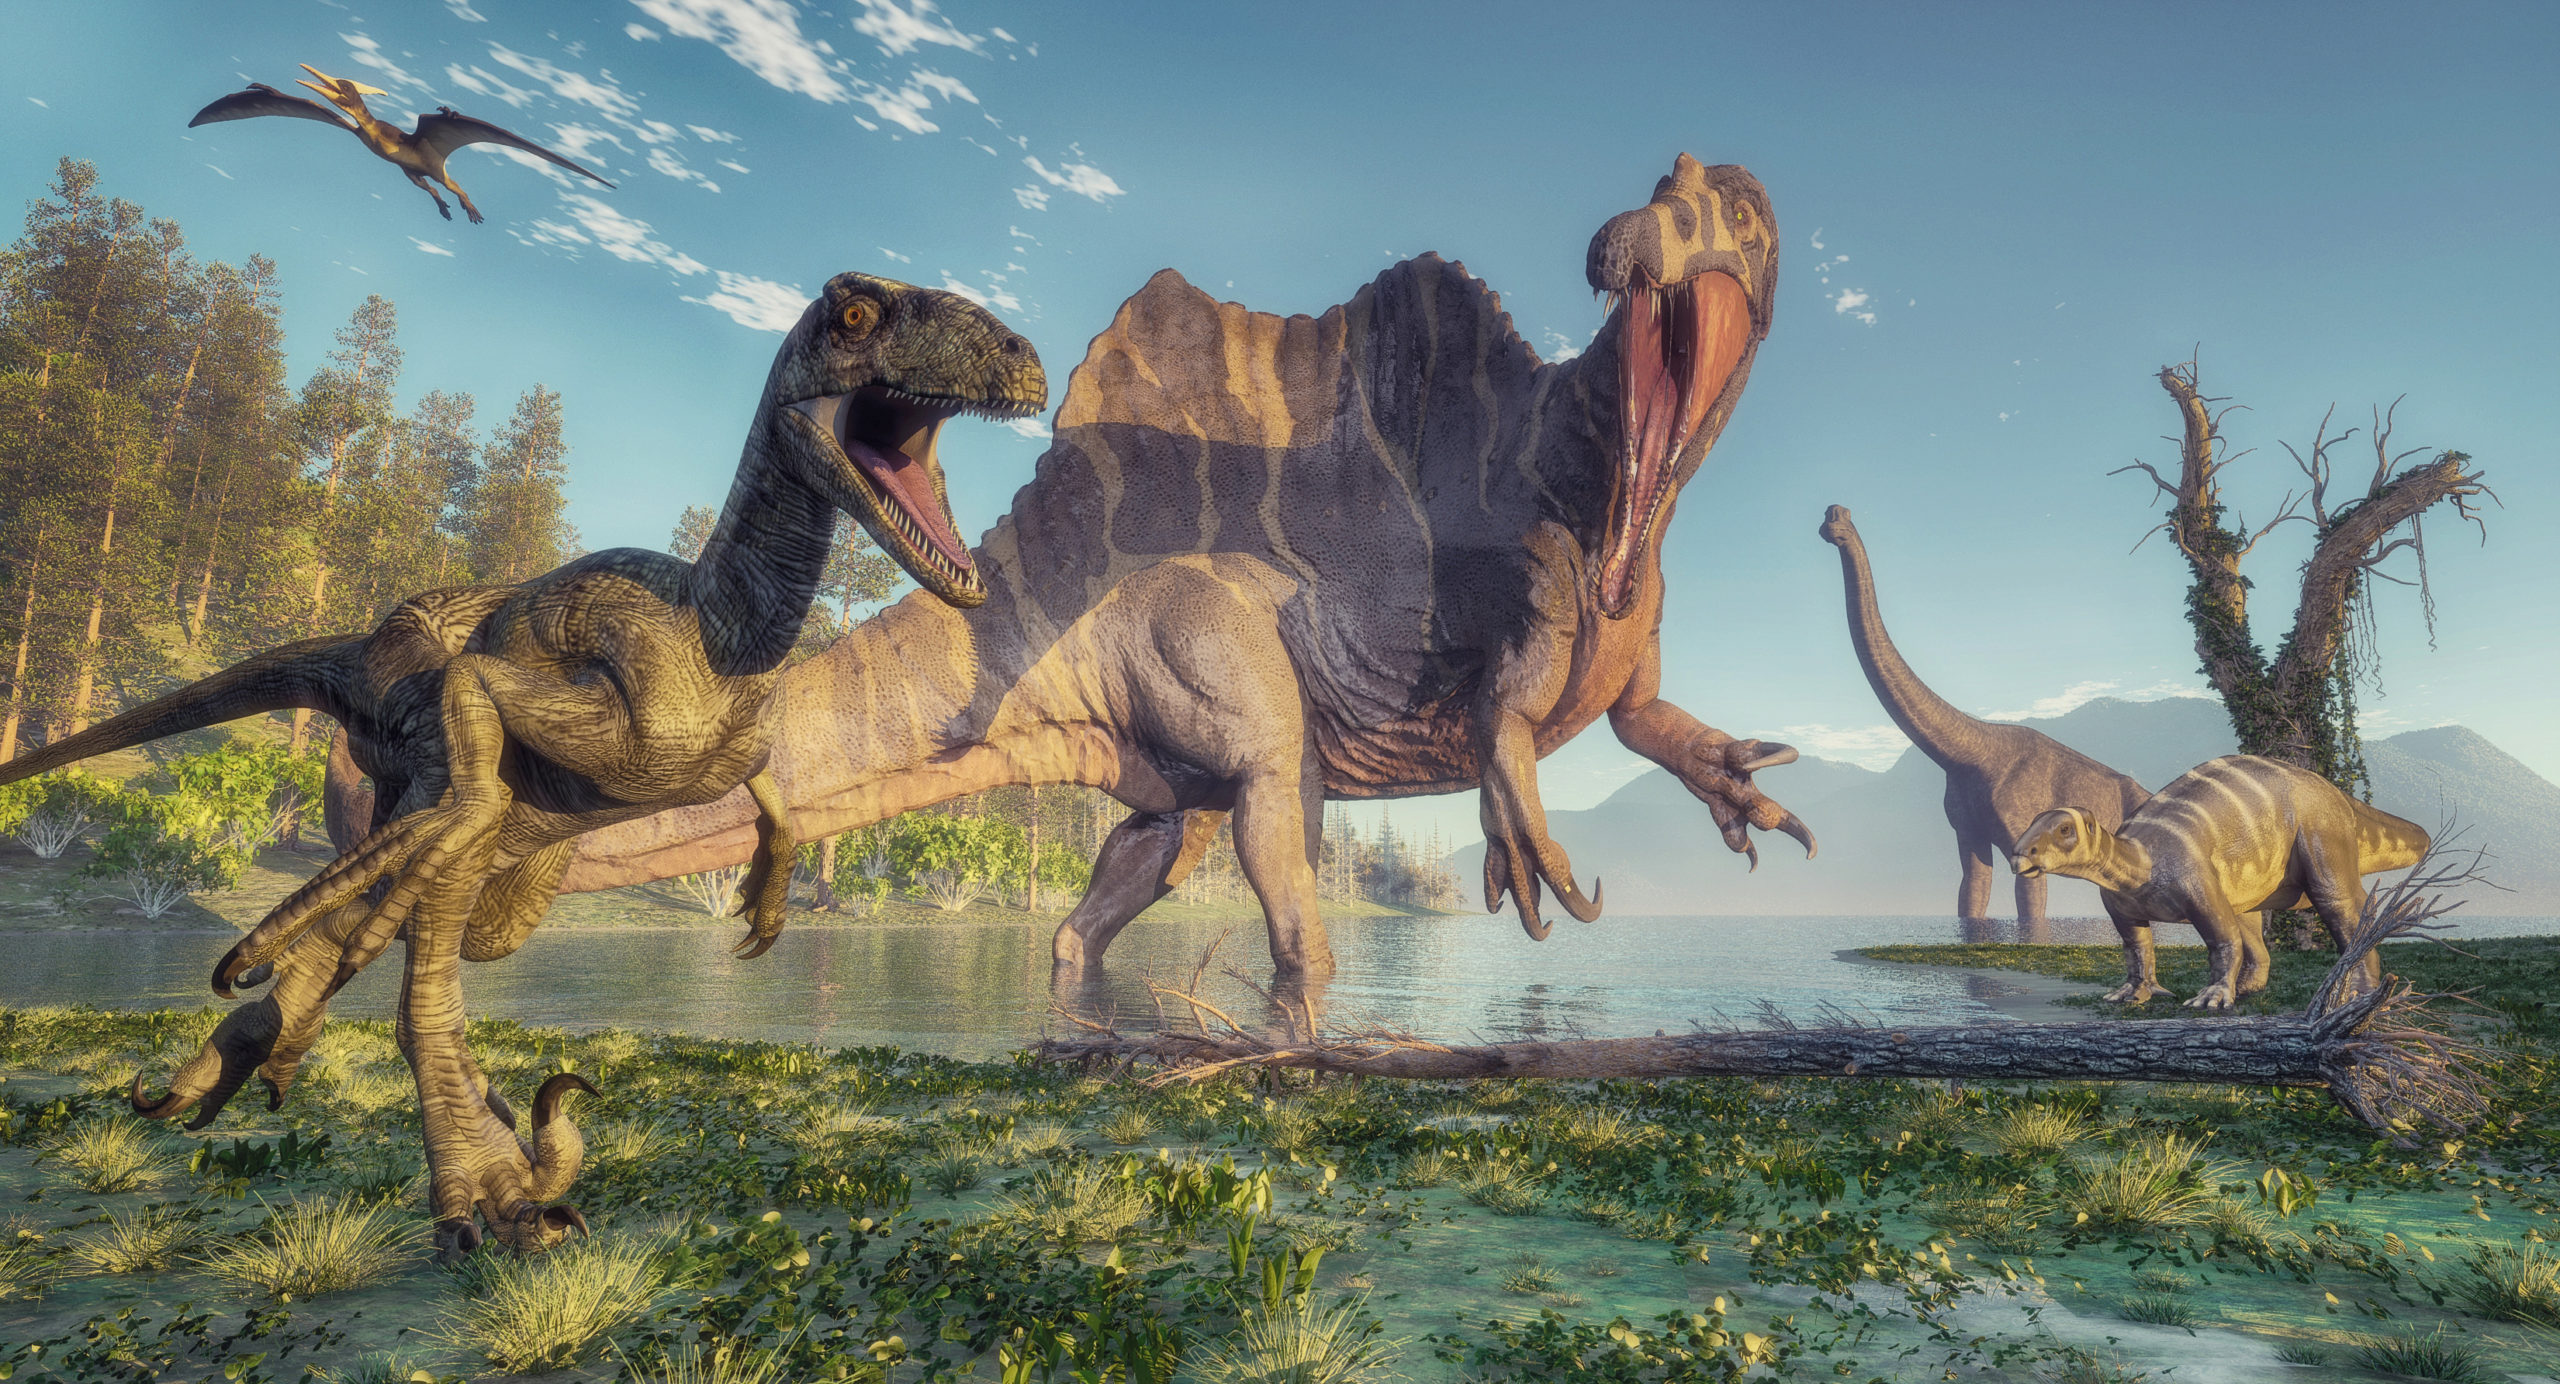 称霸地球1.6亿年的恐龙，为何会突然灭绝，那天到底发生了什么？